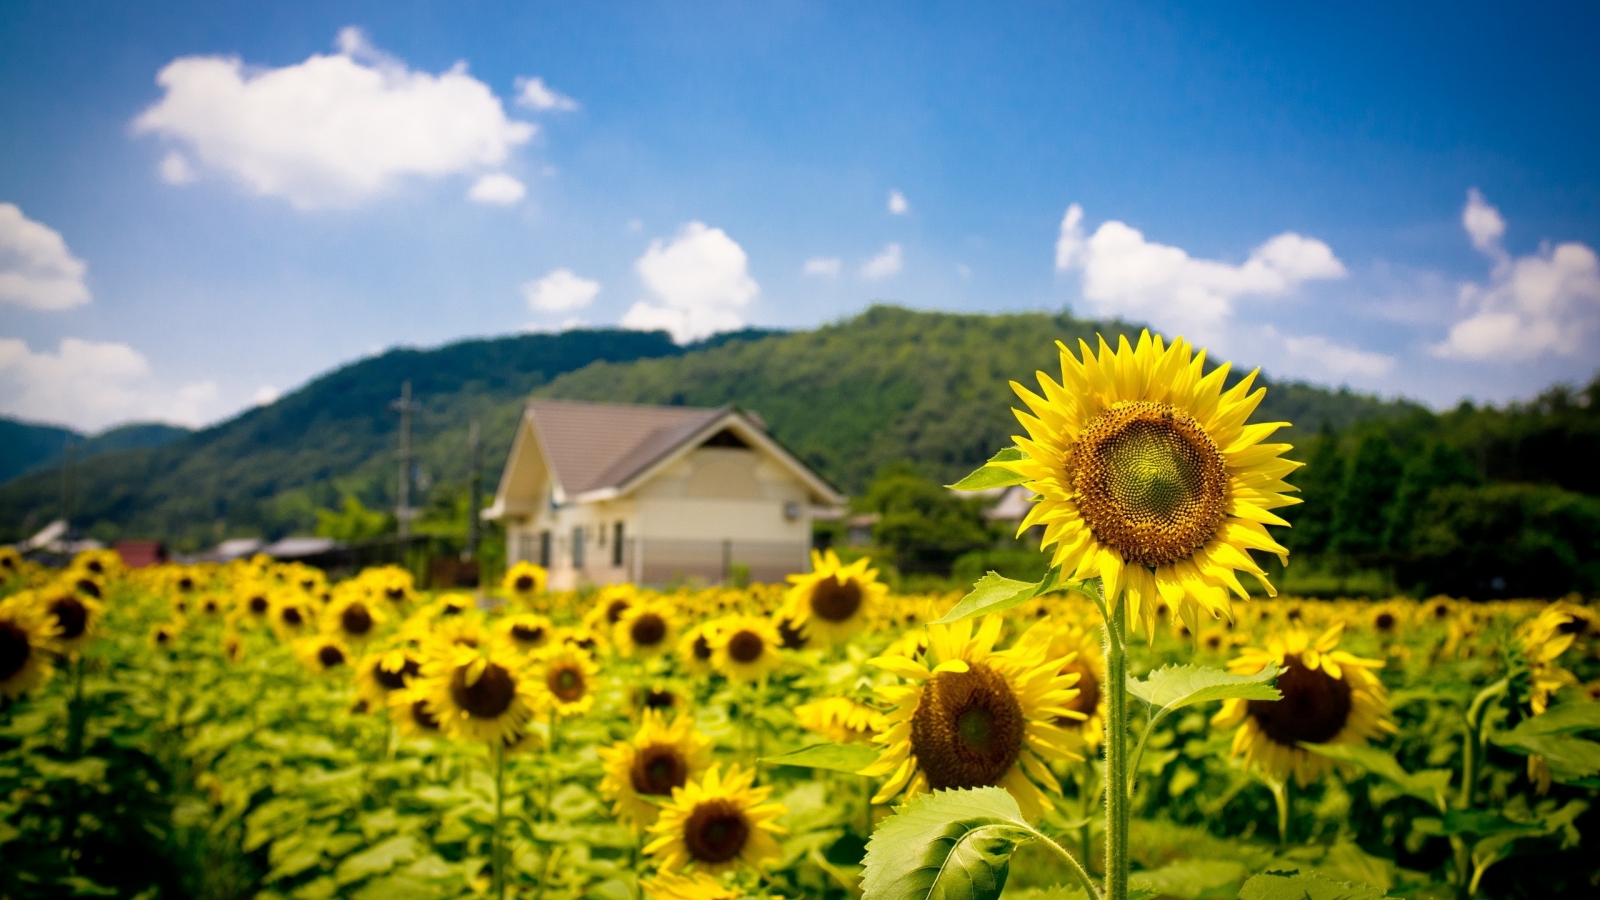 Sunflower Land for 1600 x 900 HDTV resolution